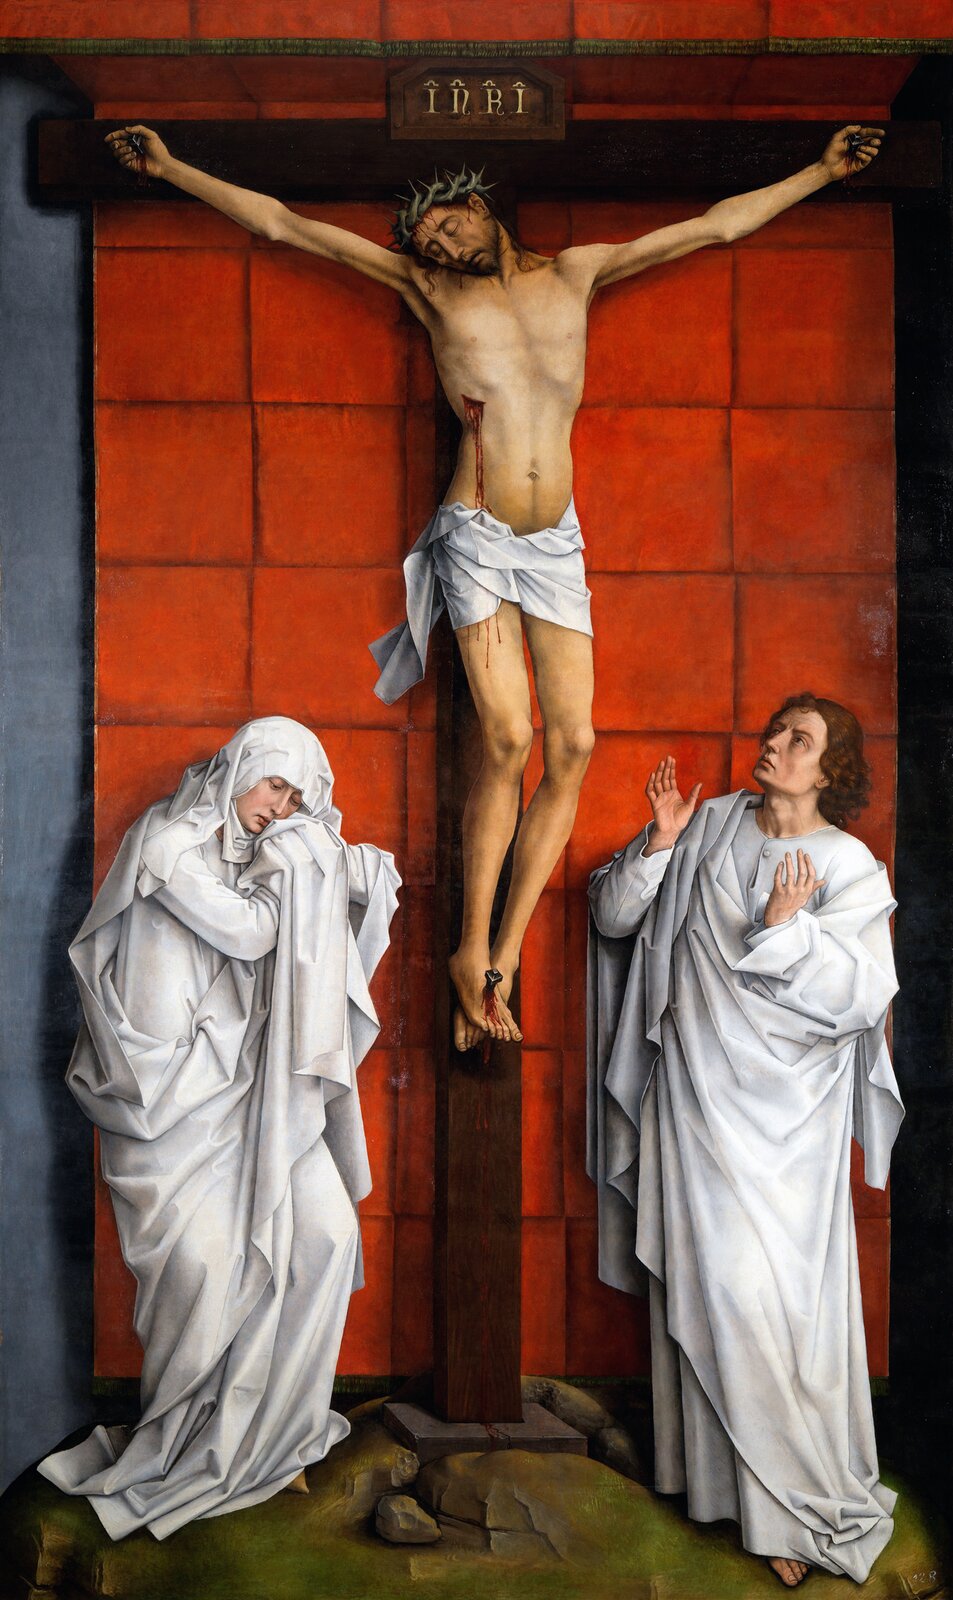 Ilustracja przedstawia obraz Rogiera van der Weydena pt. „Chrystus, Maryja i św. Jan”. Ukazuje ona ukrzyżowanego Jezusa, przy krzyżu stoi jego matka i uczeń. Jest to święty Jan.